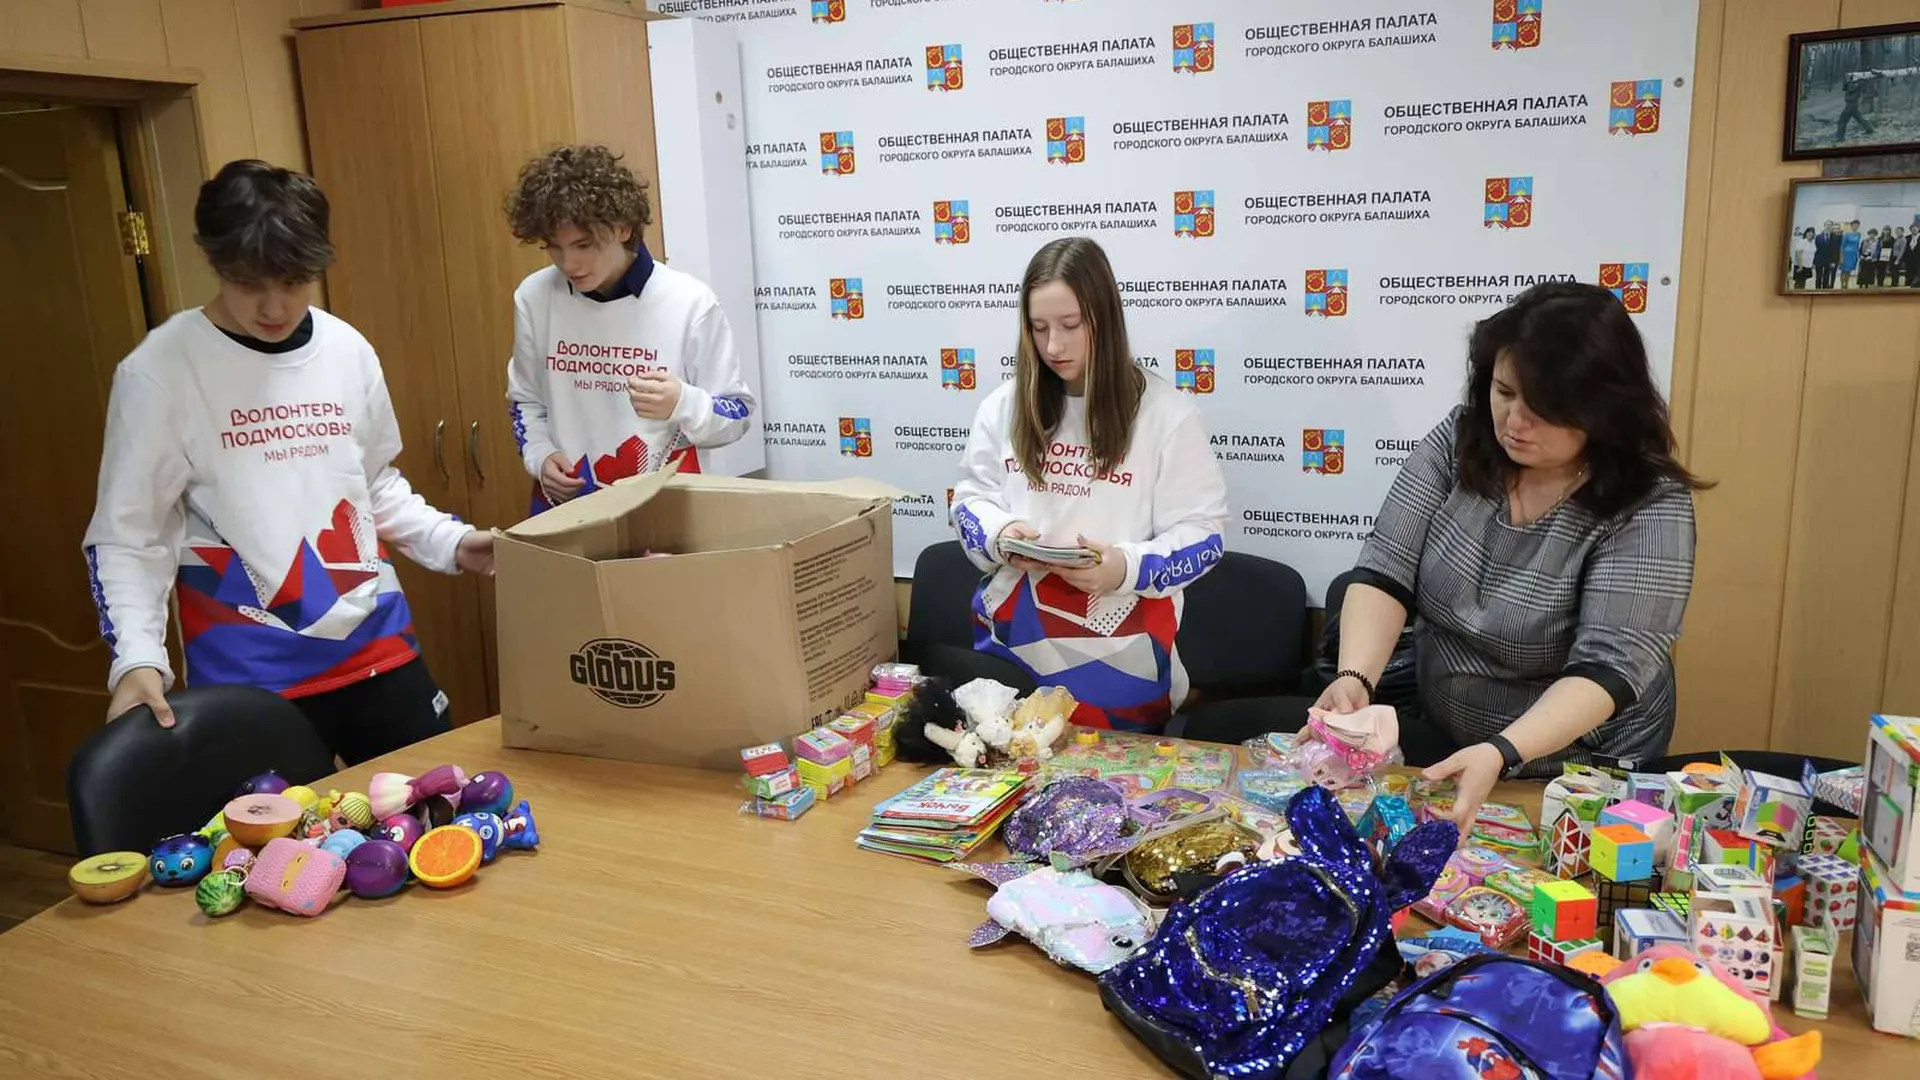 Гуманитарную помощь для беженцев из Донбасса собрали в Балашихе